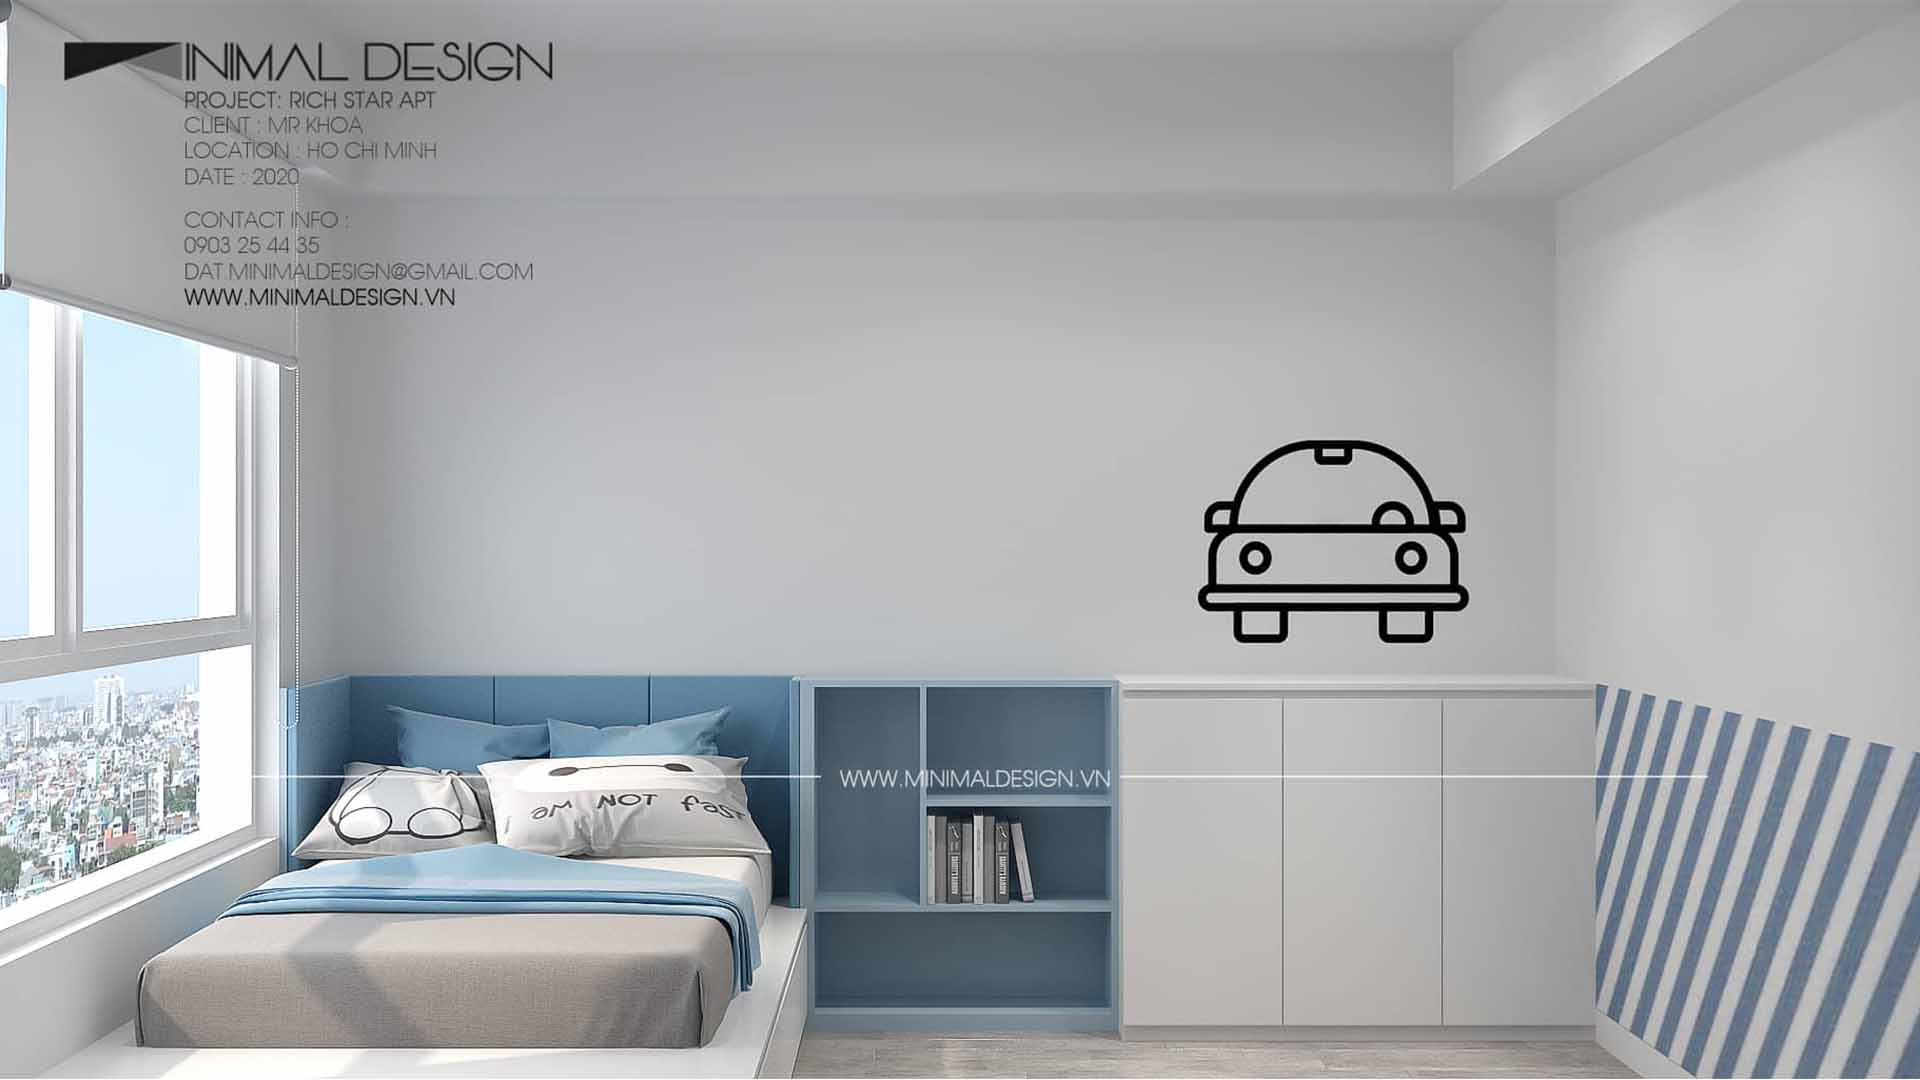 Những mẫu phòng ngủ tối giản đẹp cho bé với thiết kế hiện đại và sáng tạo phù hợp với độ tuổi, sở thích và nhu cầu của trẻ mà bạn nên biết.